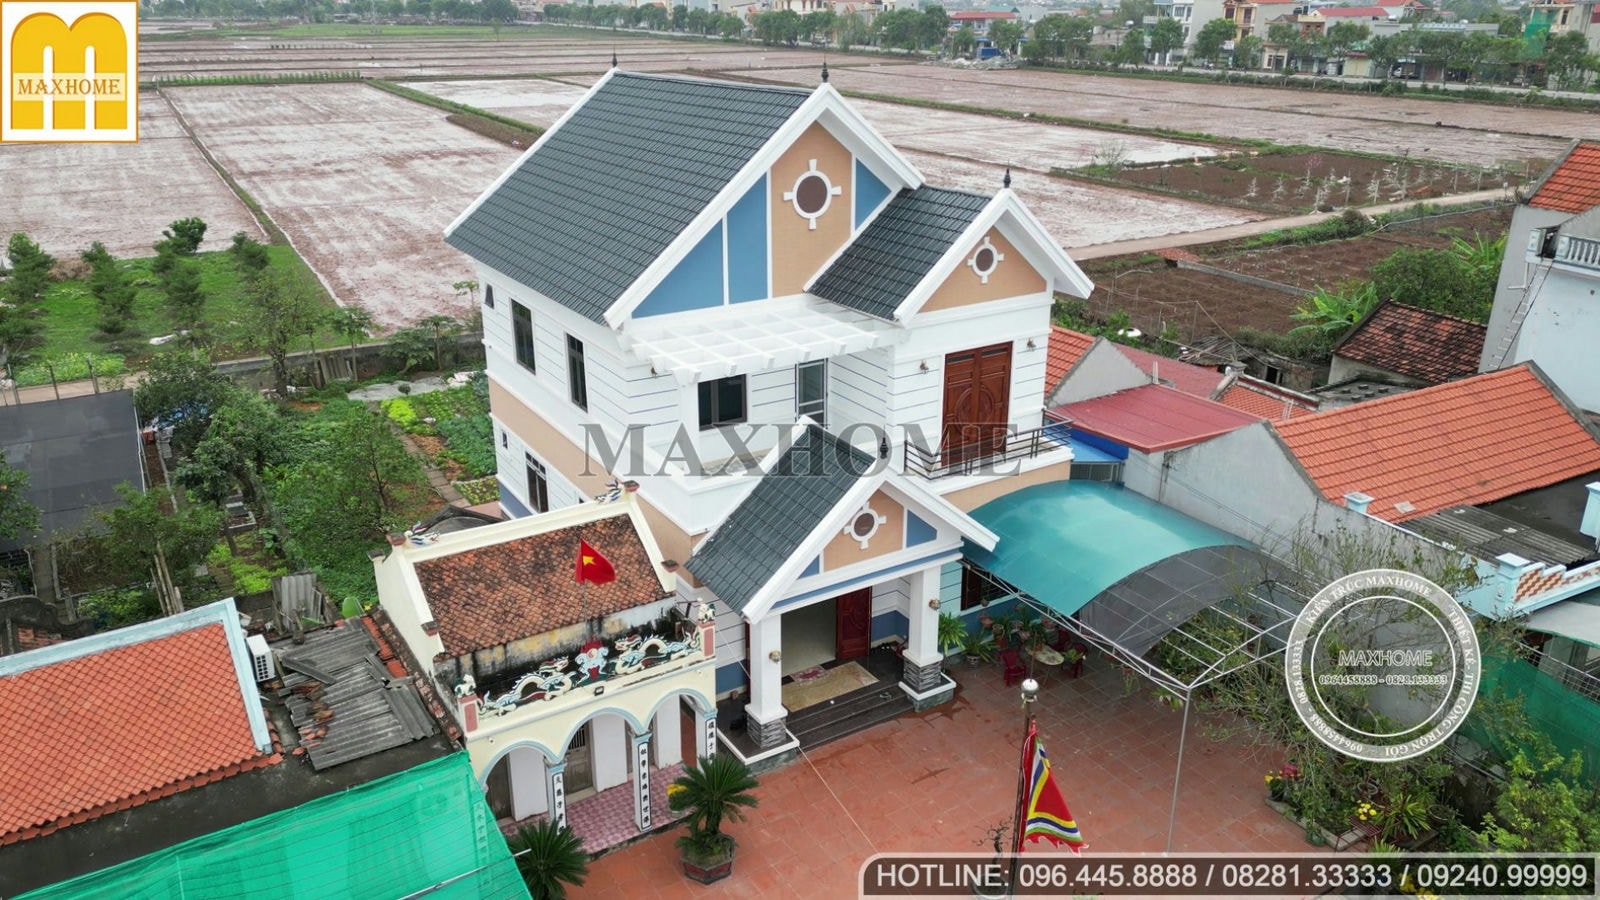 Mẫu nhà mái Thái nguy nga, tráng lệ tại Nam Định với ngoại thất bắt mắt